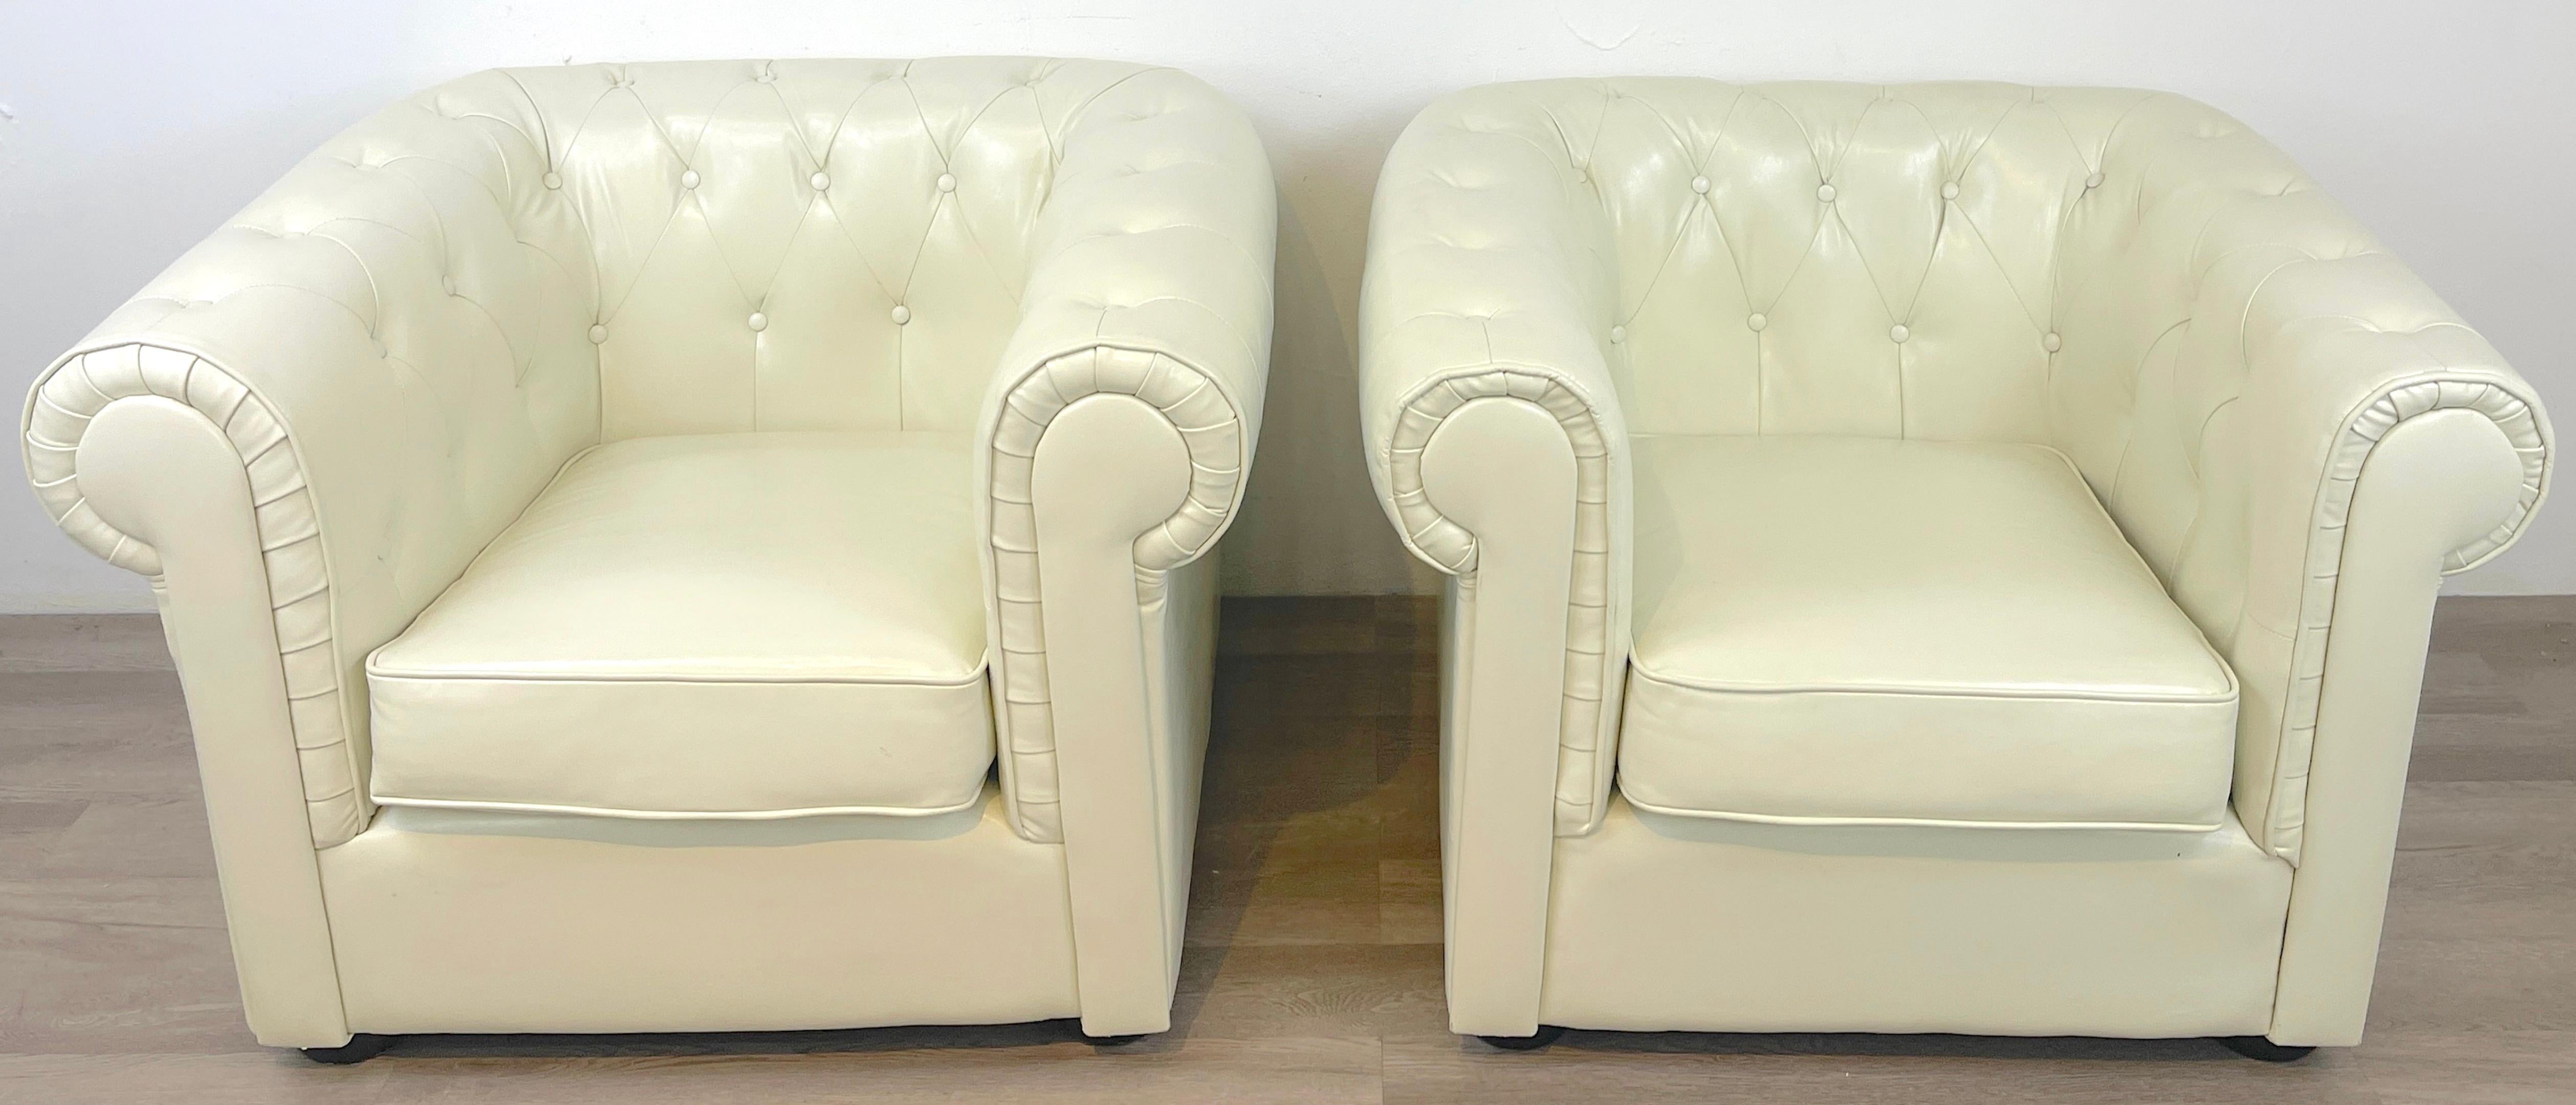 Paar Chesterfield-Clubsessel aus weißem Leder, jeweils großzügig dimensioniert, mit gerollten Armlehnen, getuftete durchgehende Rückenlehne. Ausgezeichneter Vintage-Zustand, bereit zum Aufstellen.
Jeder Stuhl ist 40